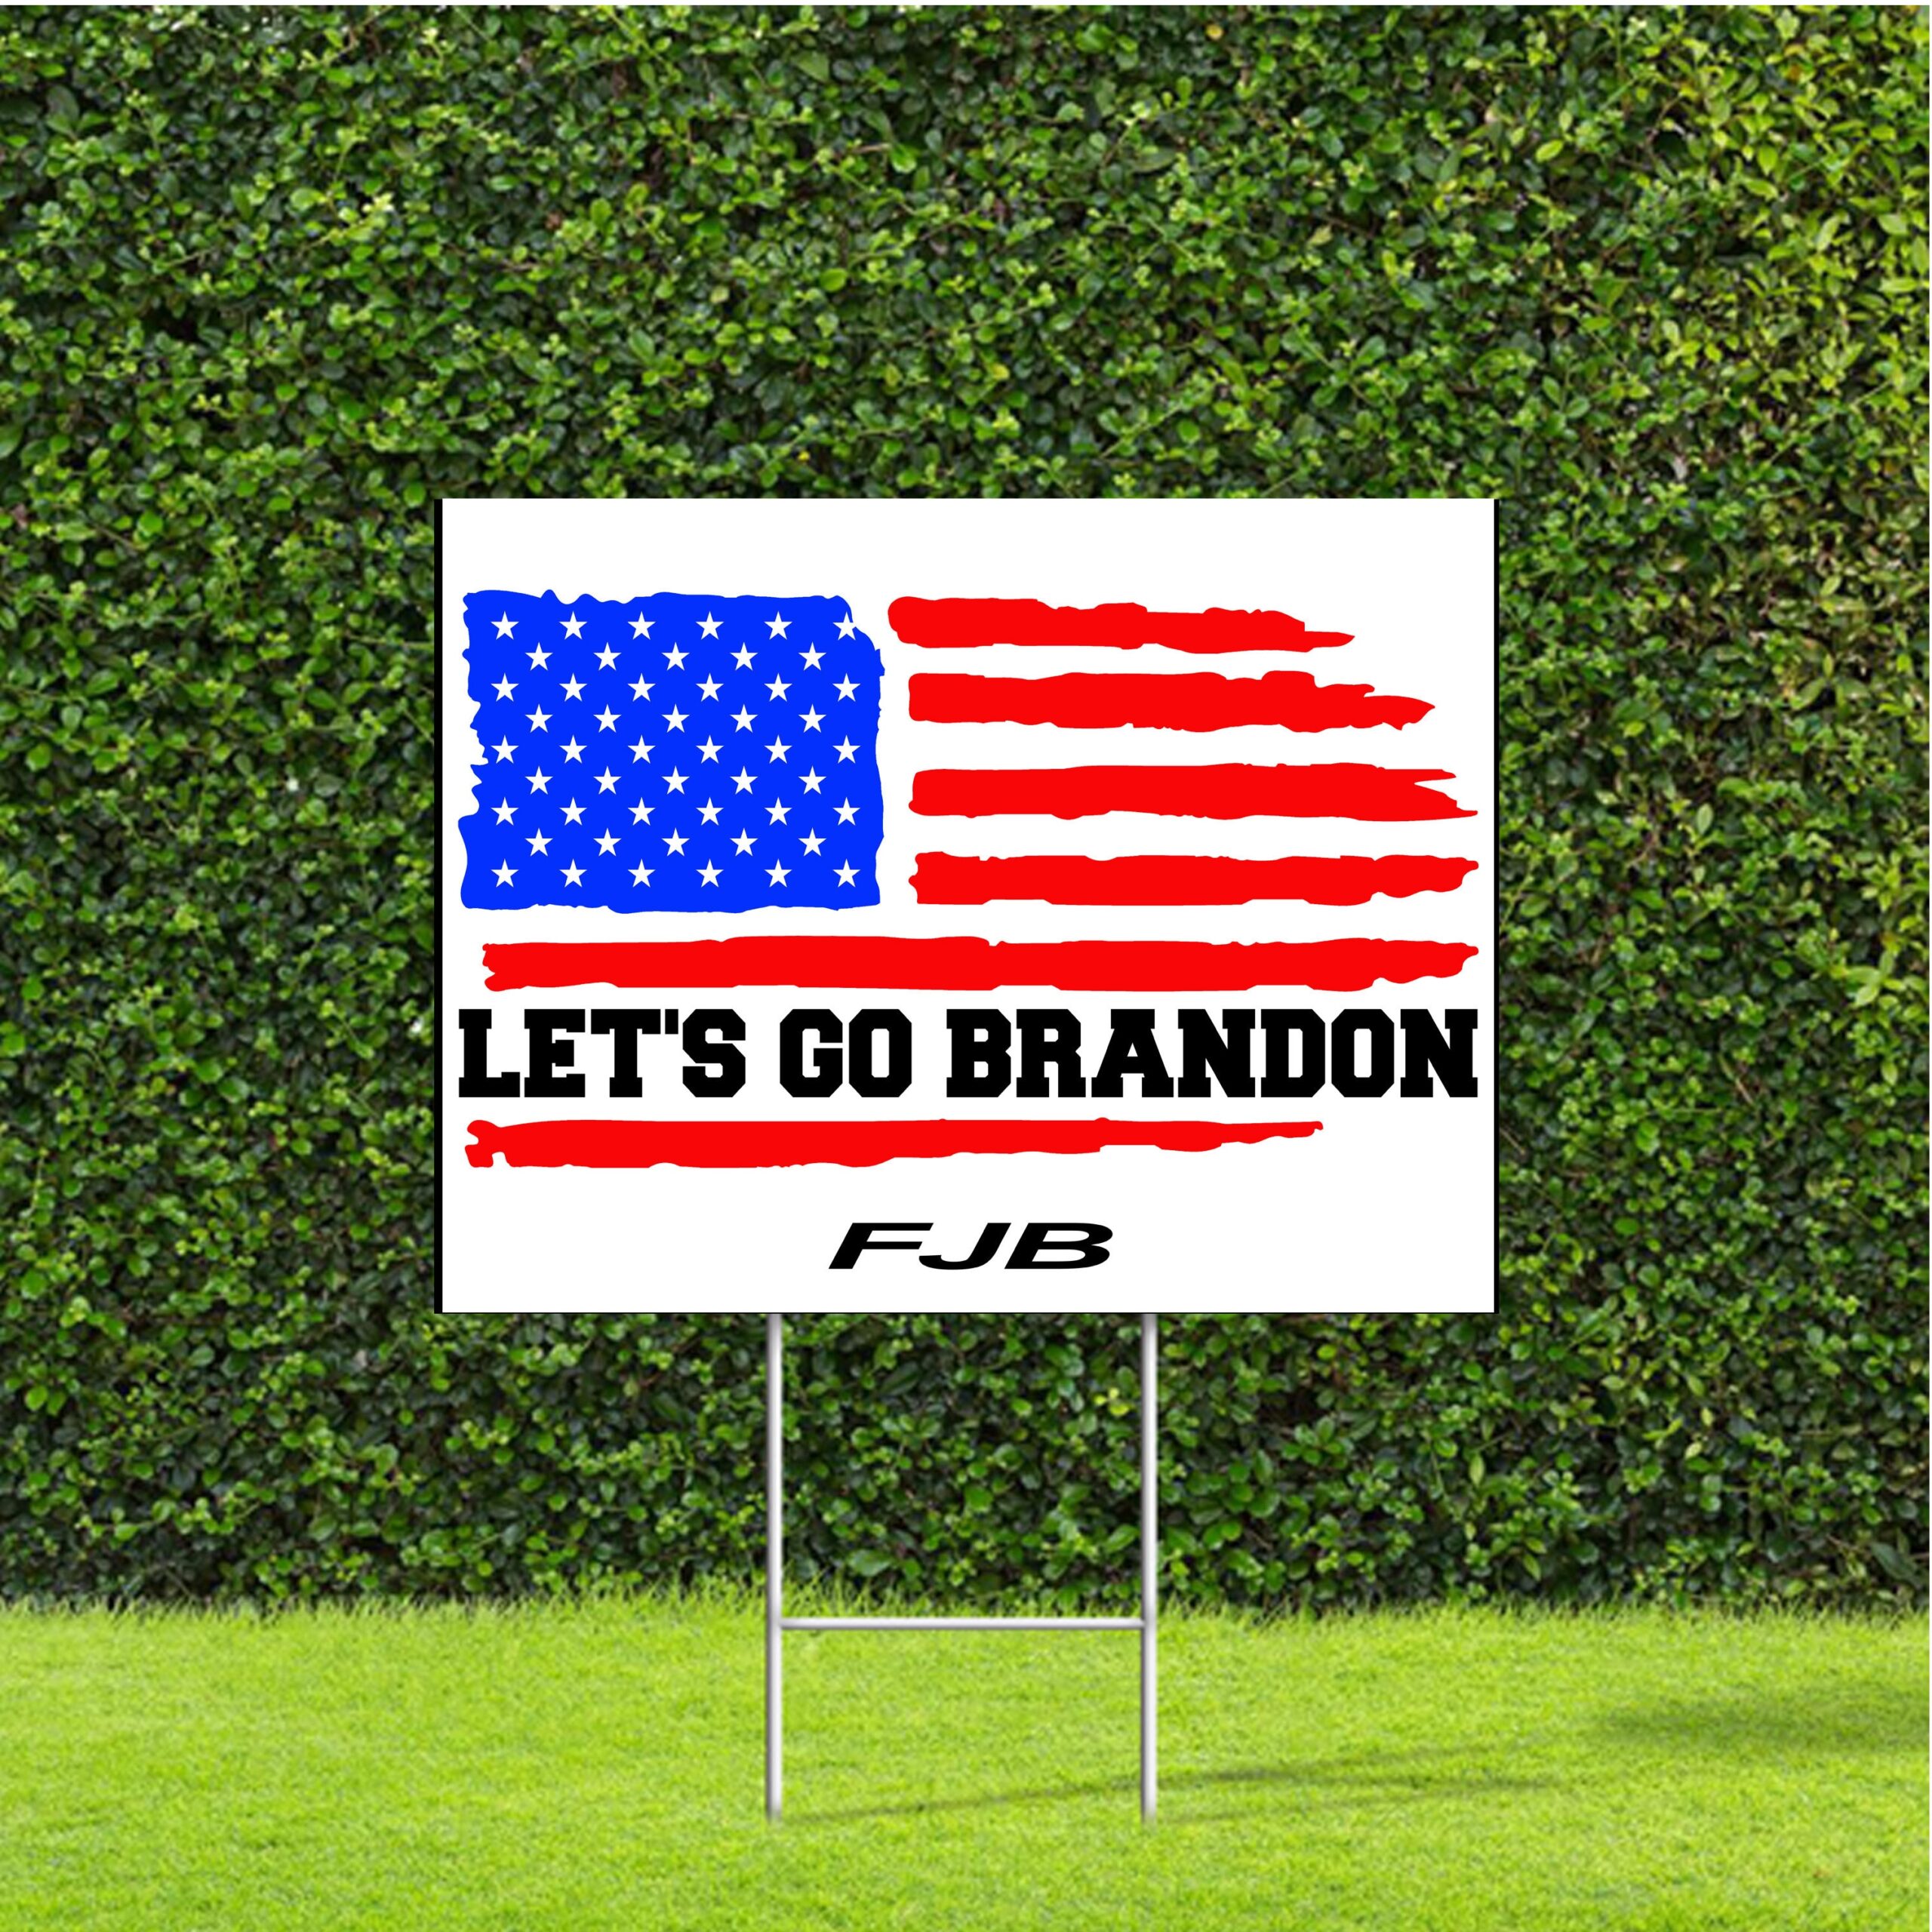 🏁 Let's go Brandon! #FJB